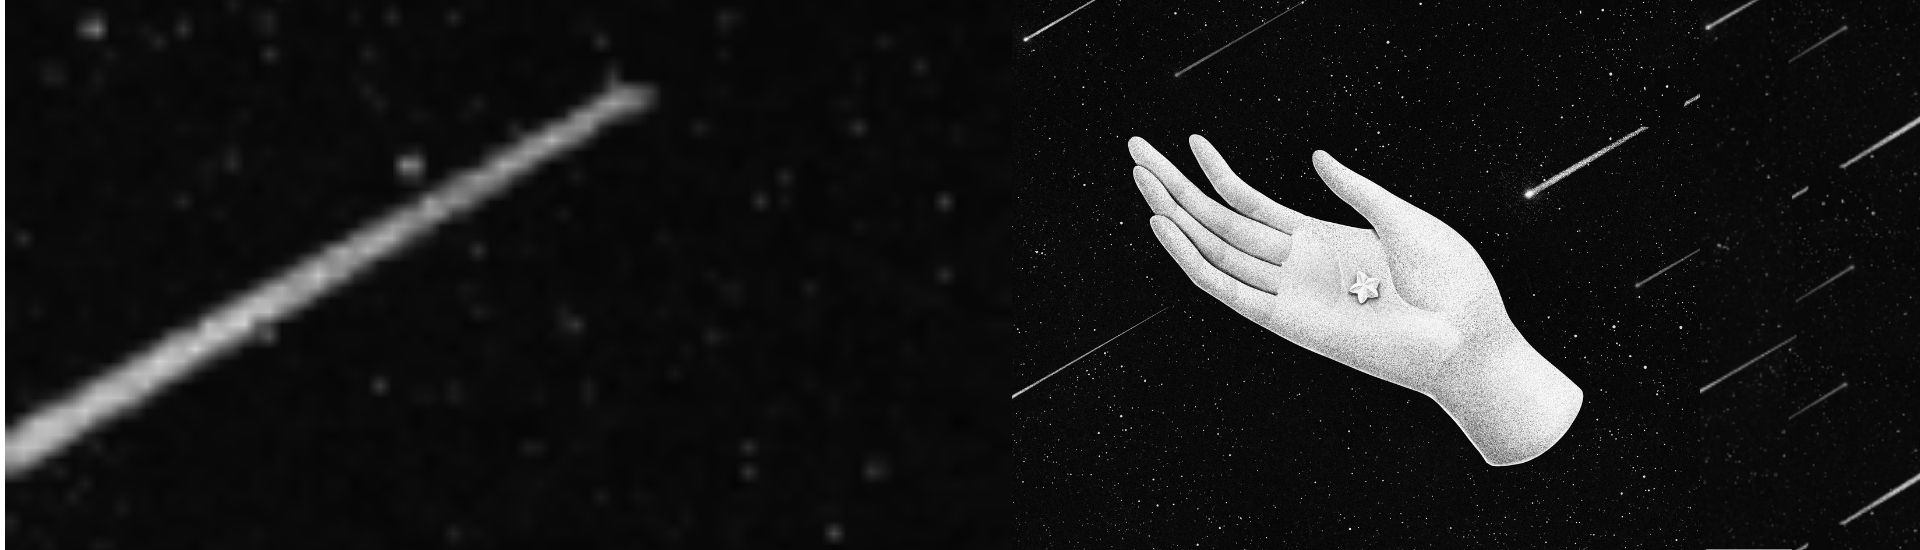 Ilustración de una mano sosteniendo una estrella en medio de un cielo oscuro lleno de estrellas